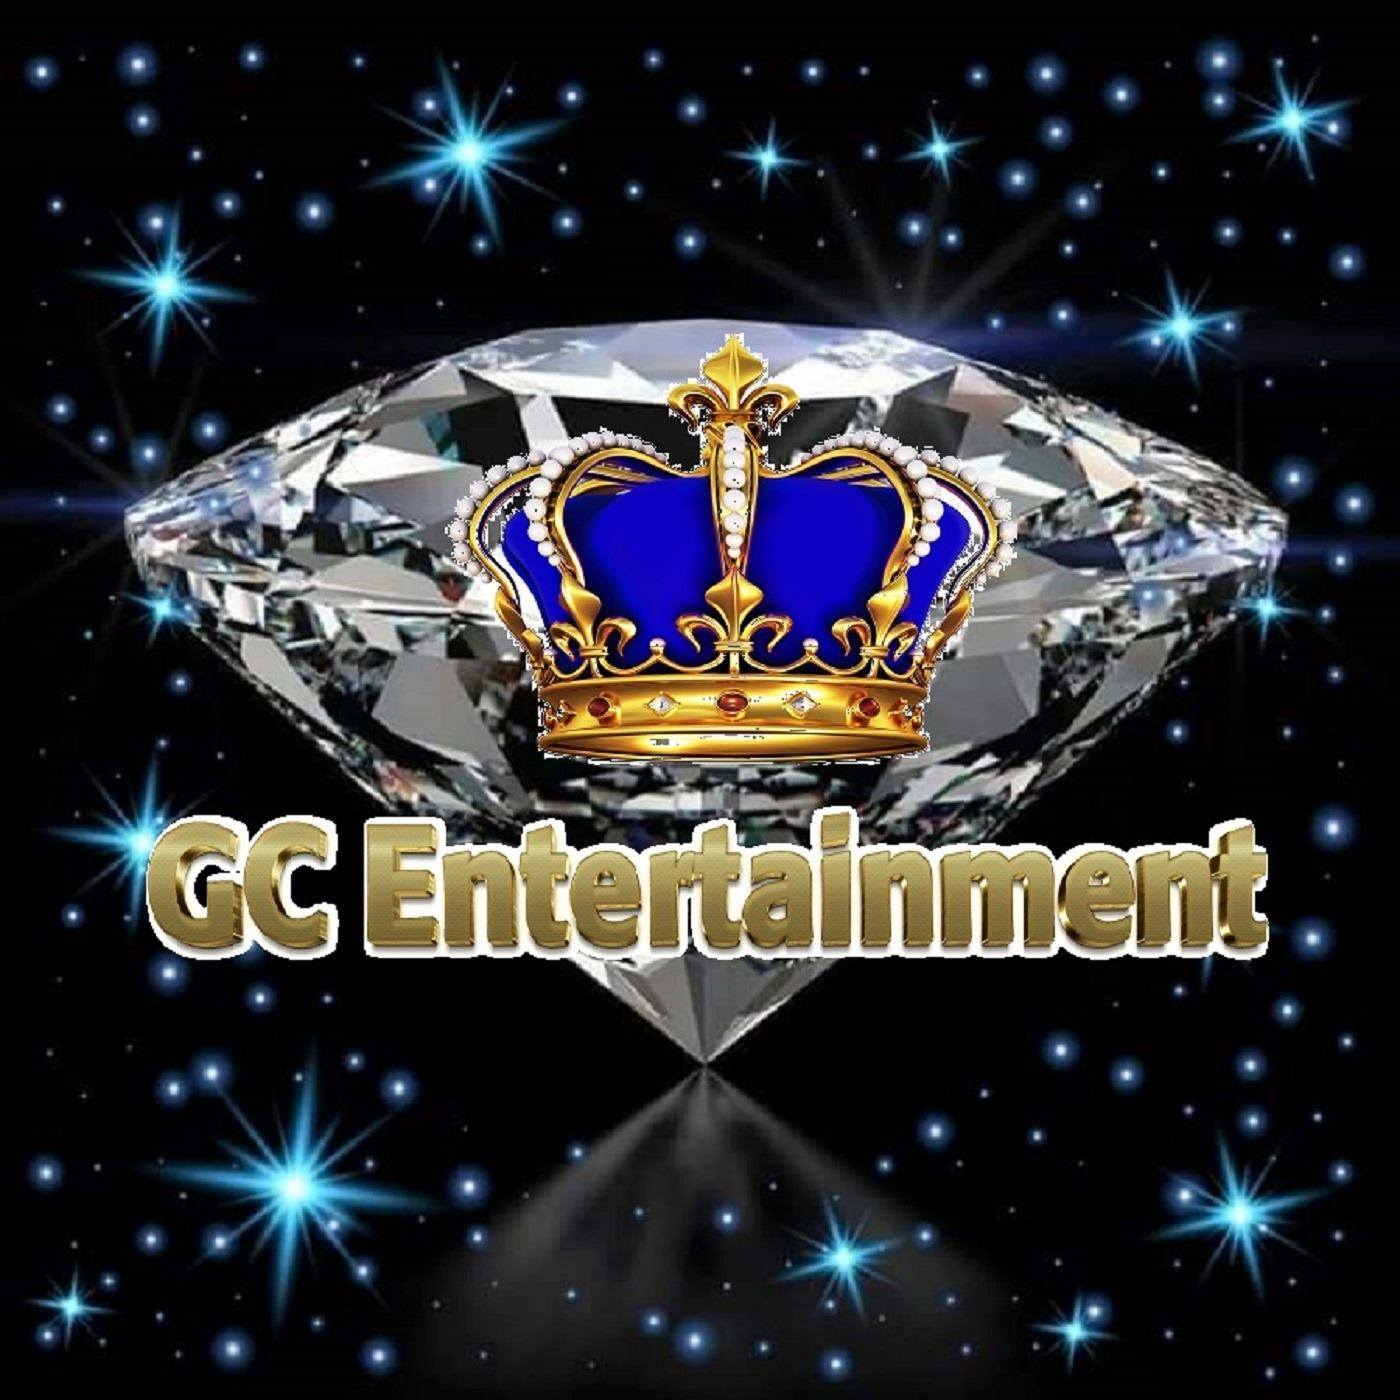 GC Entertainment